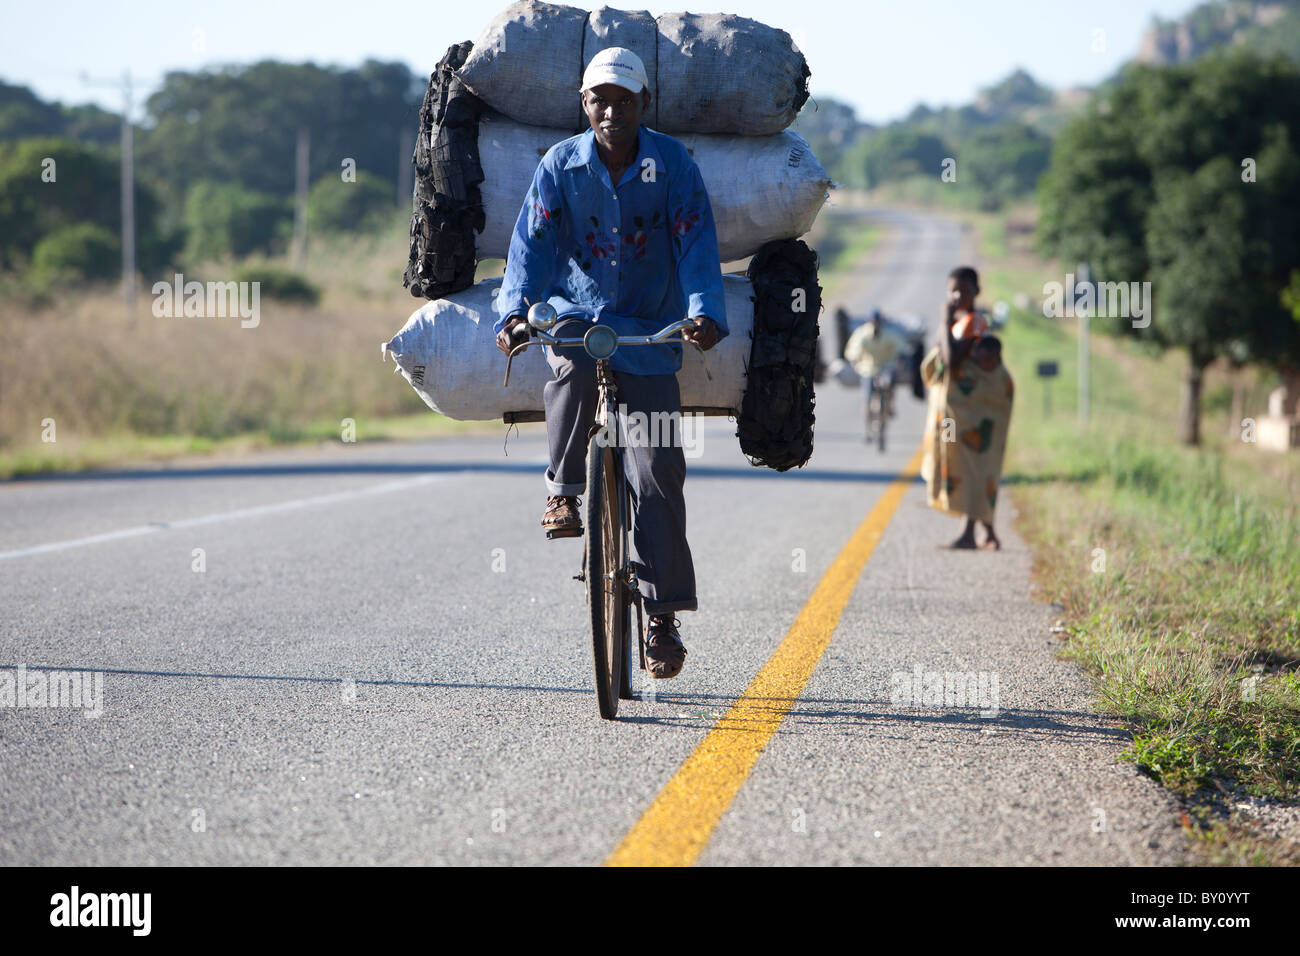 MUECATE Forêt, Près de Nampula, MOZAMBIQUE, Mai 2010 : rapprocher le charbon à Nampula en vélo. Un sac de charbon se vend à 100 Mt. Banque D'Images